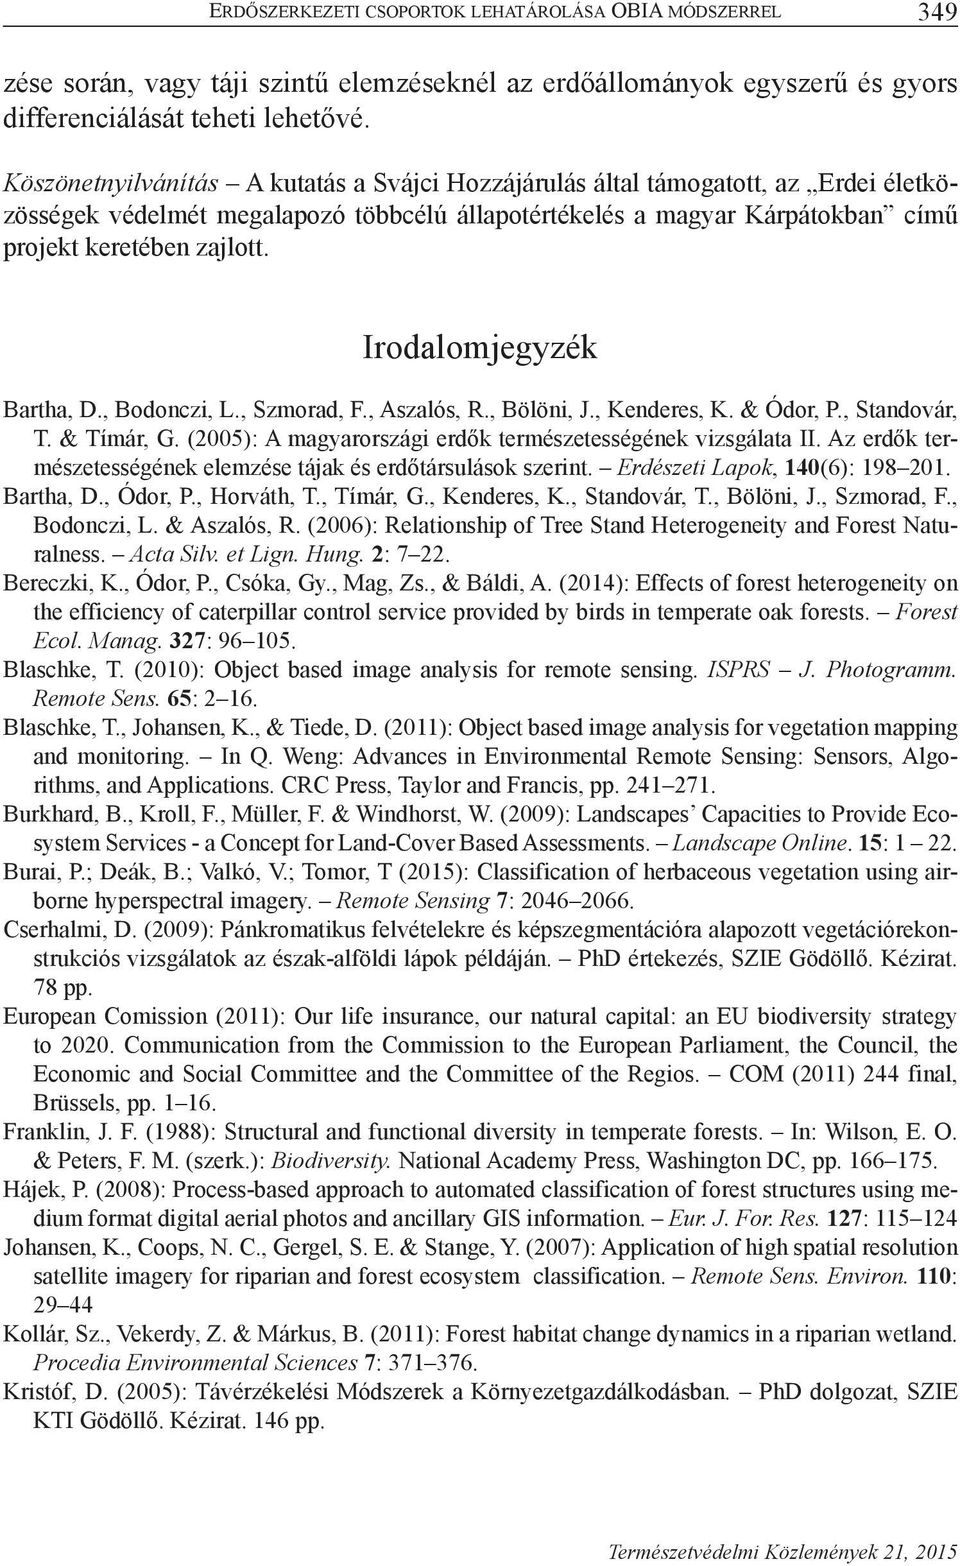 Irodalomjegyzék Bartha, D., Bodonczi, L., Szmorad, F., Aszalós, R., Bölöni, J., Kenderes, K. & Ódor, P., Standovár, T. & Tímár, G. (2005): A magyarországi erdők természetességének vizsgálata II.